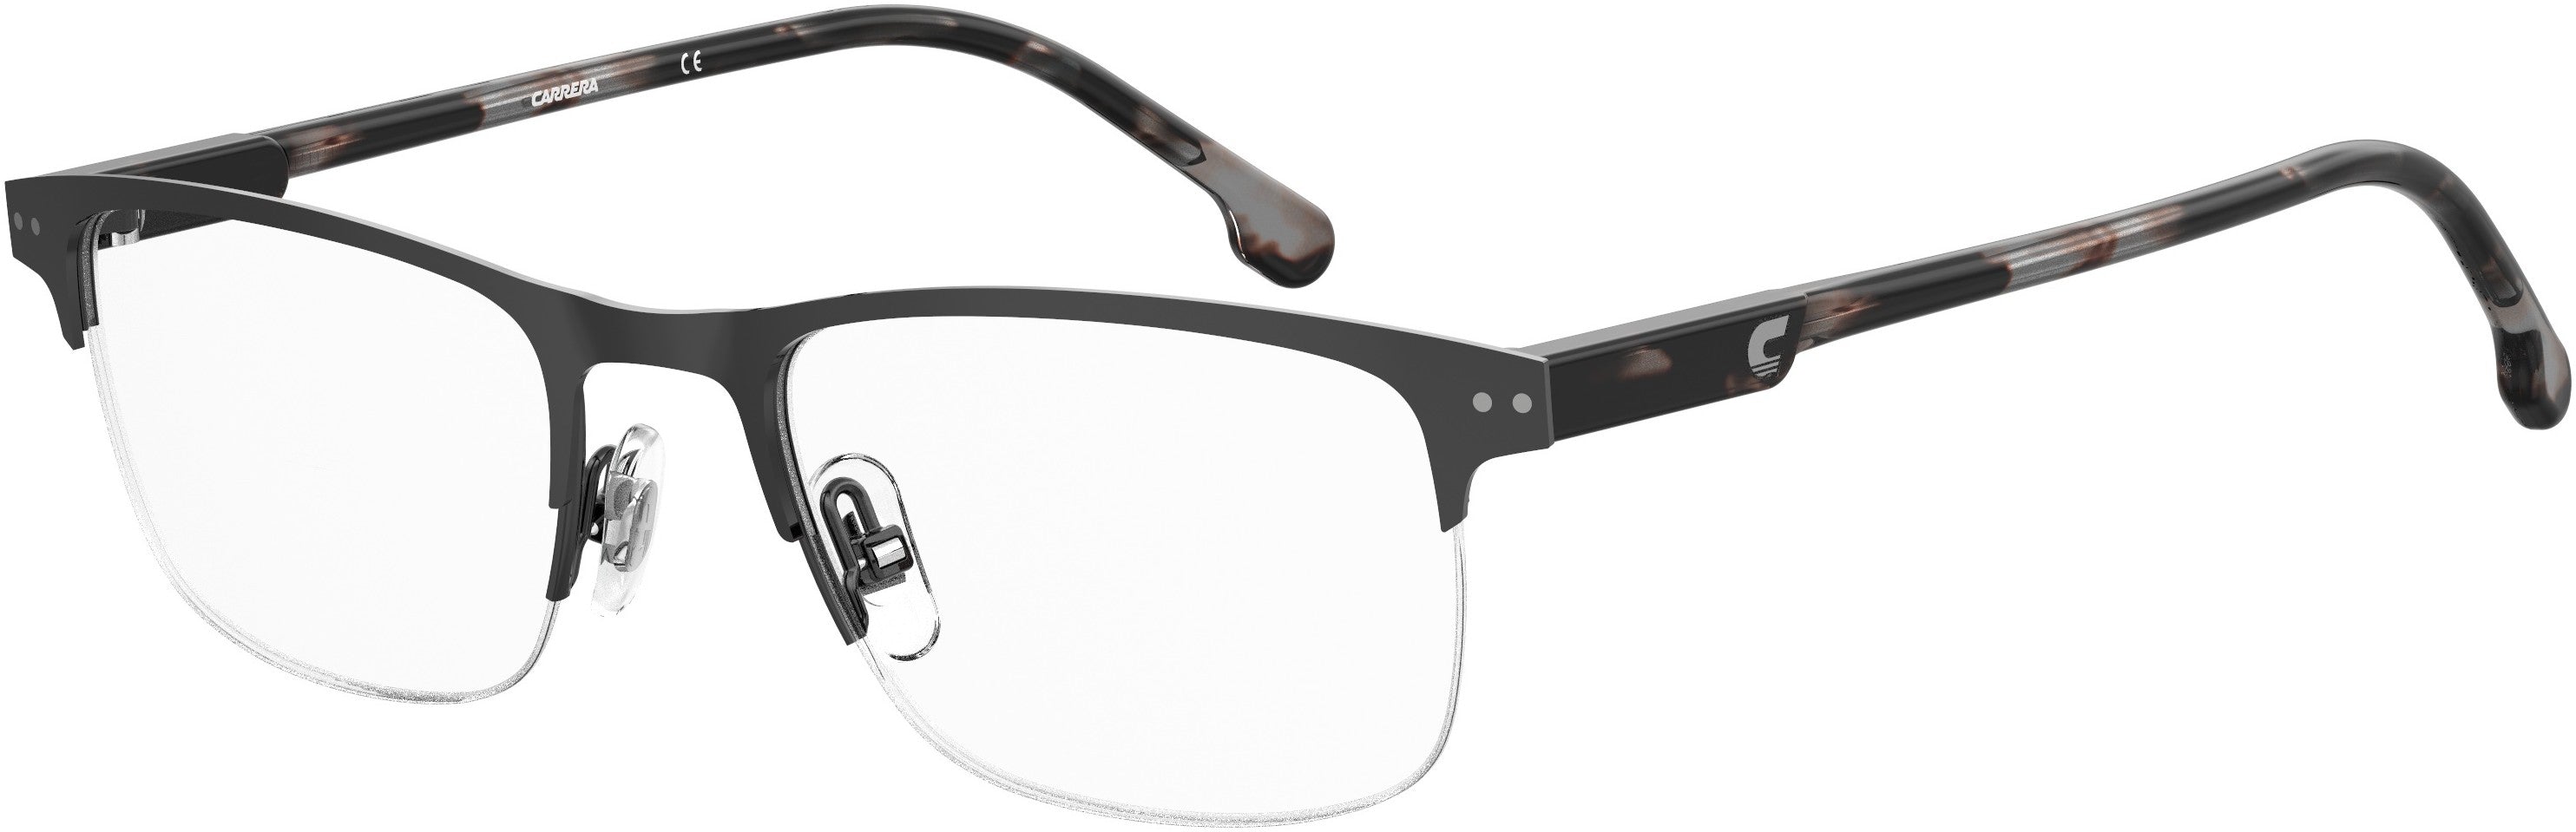  Carrera 2019/T Rectangular Eyeglasses 0V81-0V81  Dark Ruthenium Black (00 Demo Lens)